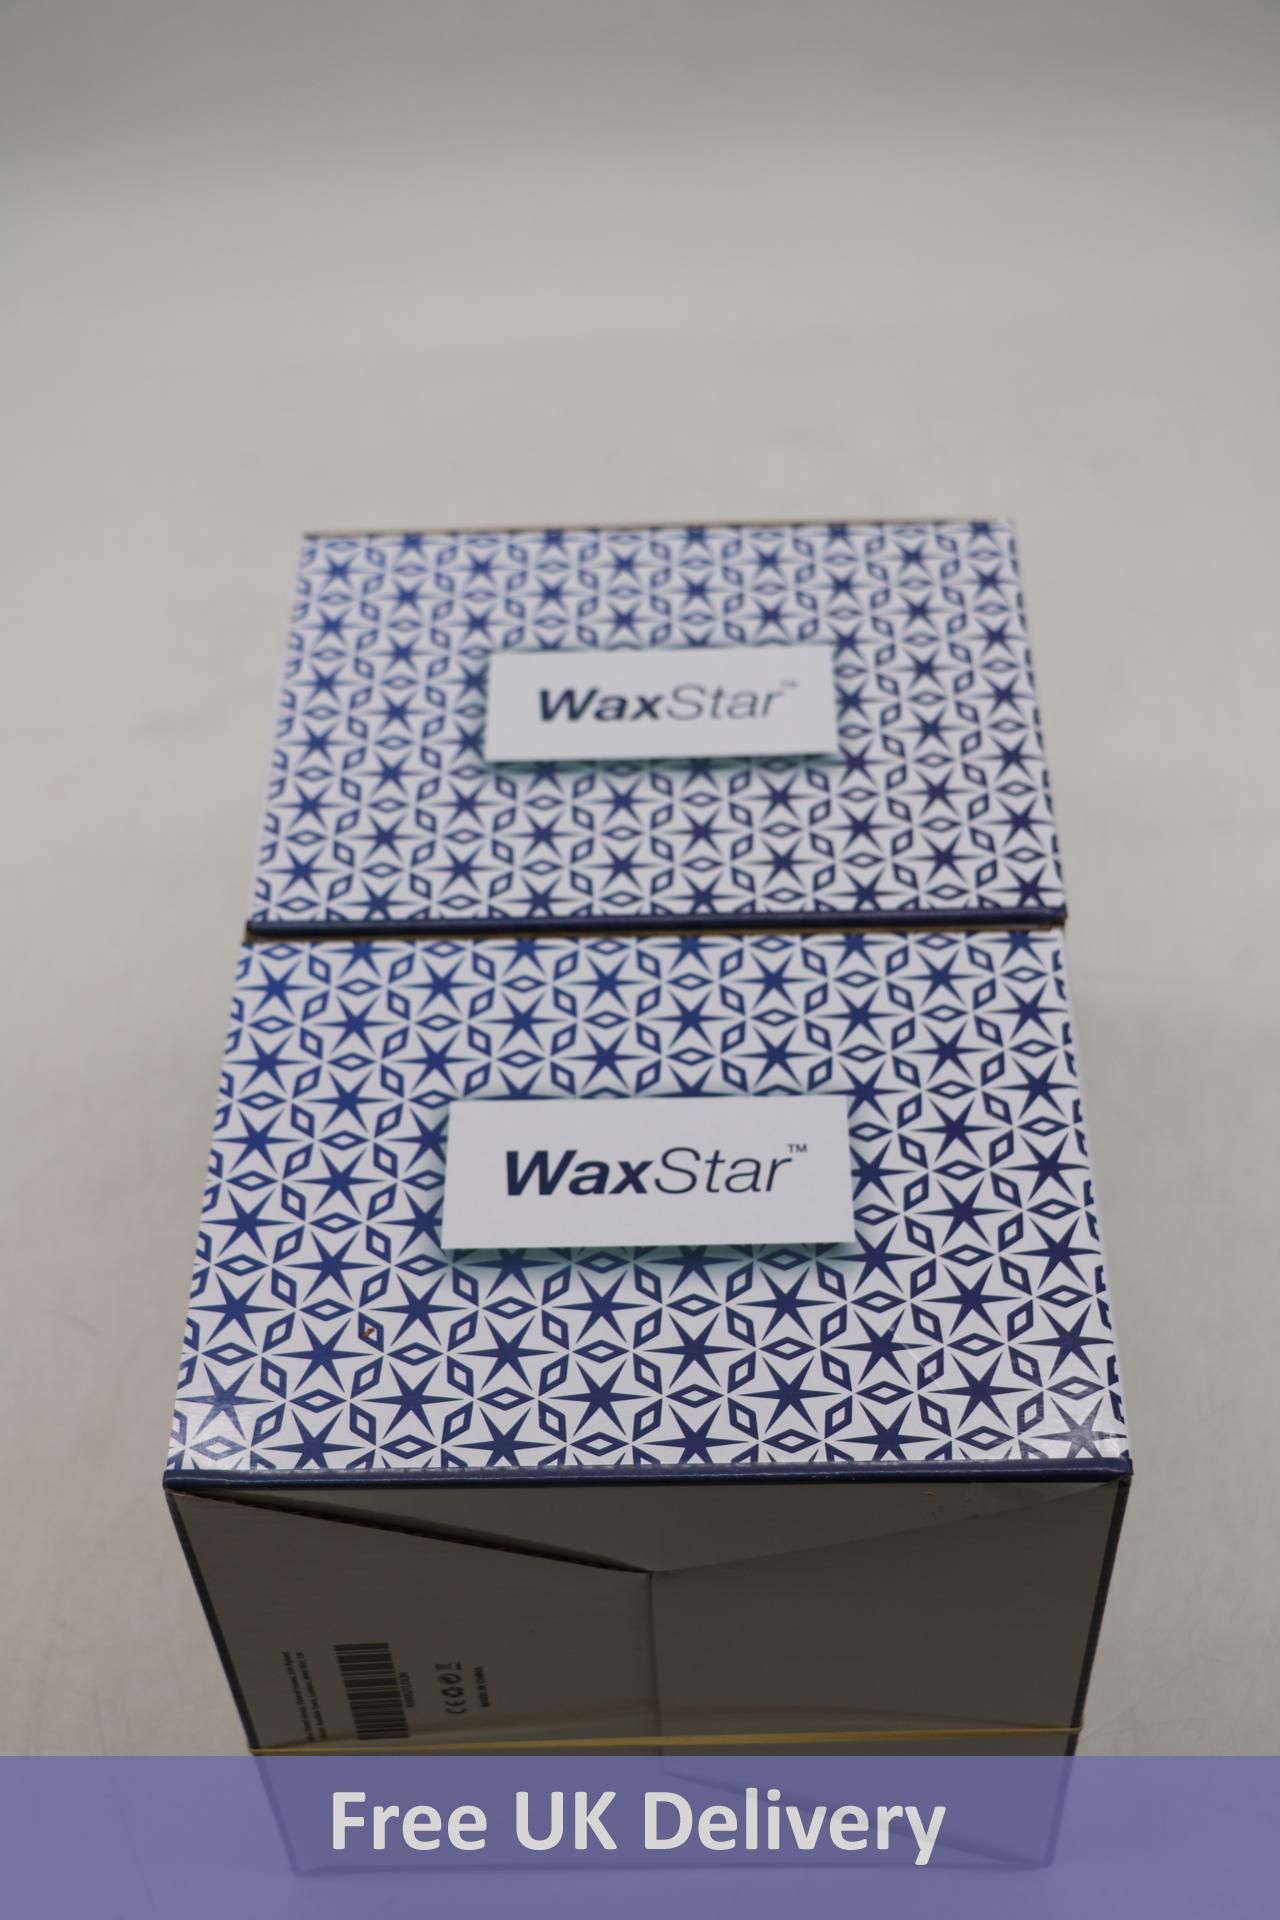 Six Vax Star Professional Wax Warmers - Image 3 of 3